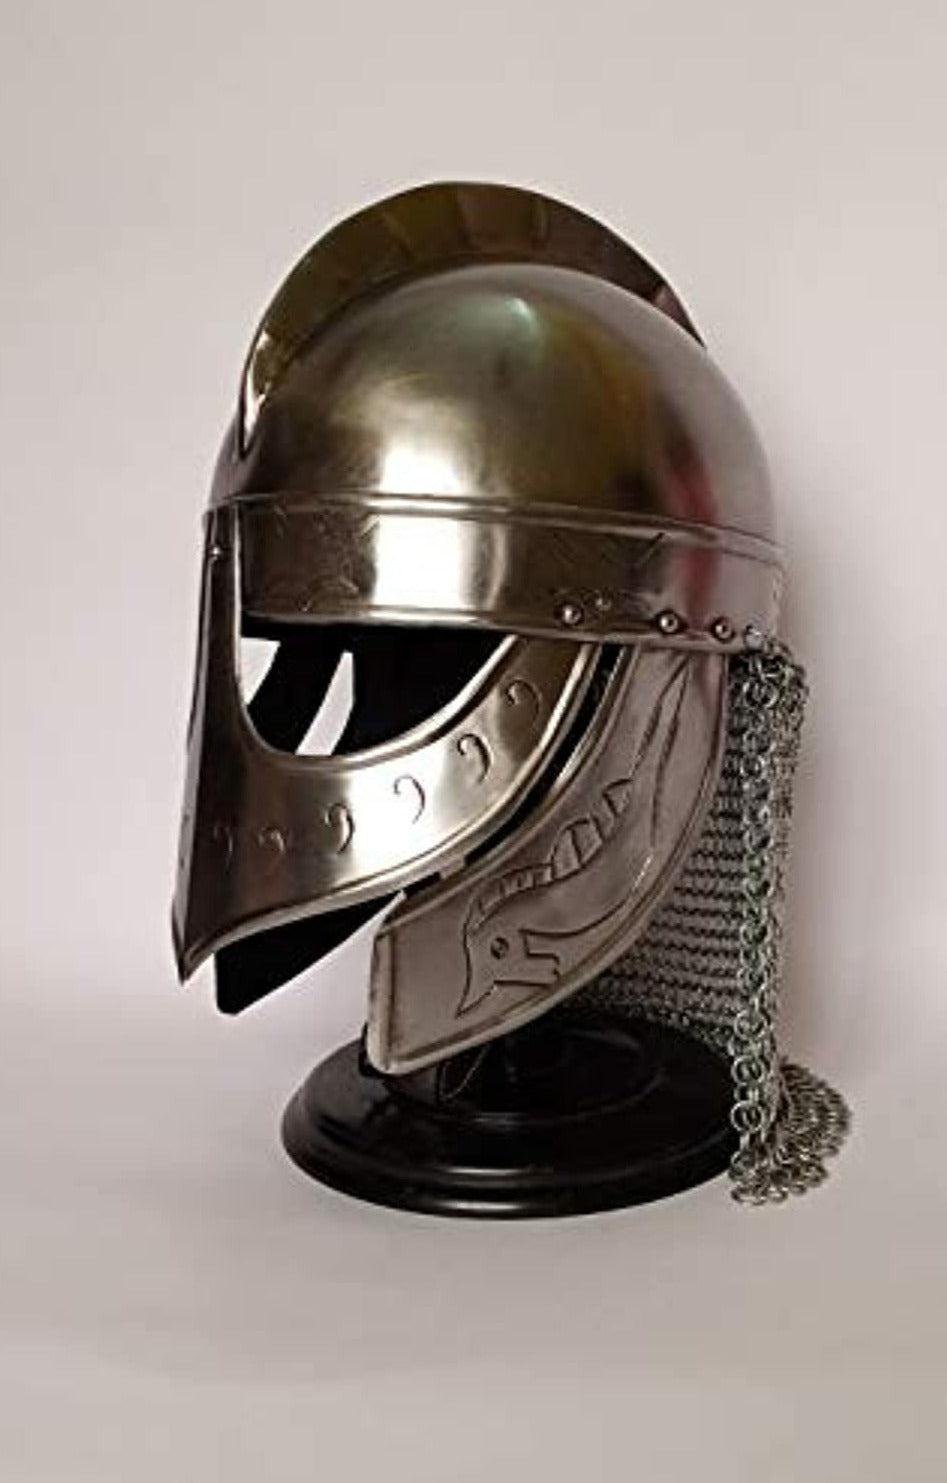 Valsgarde Helm in Stainless Steel - Viking Helmet Armor